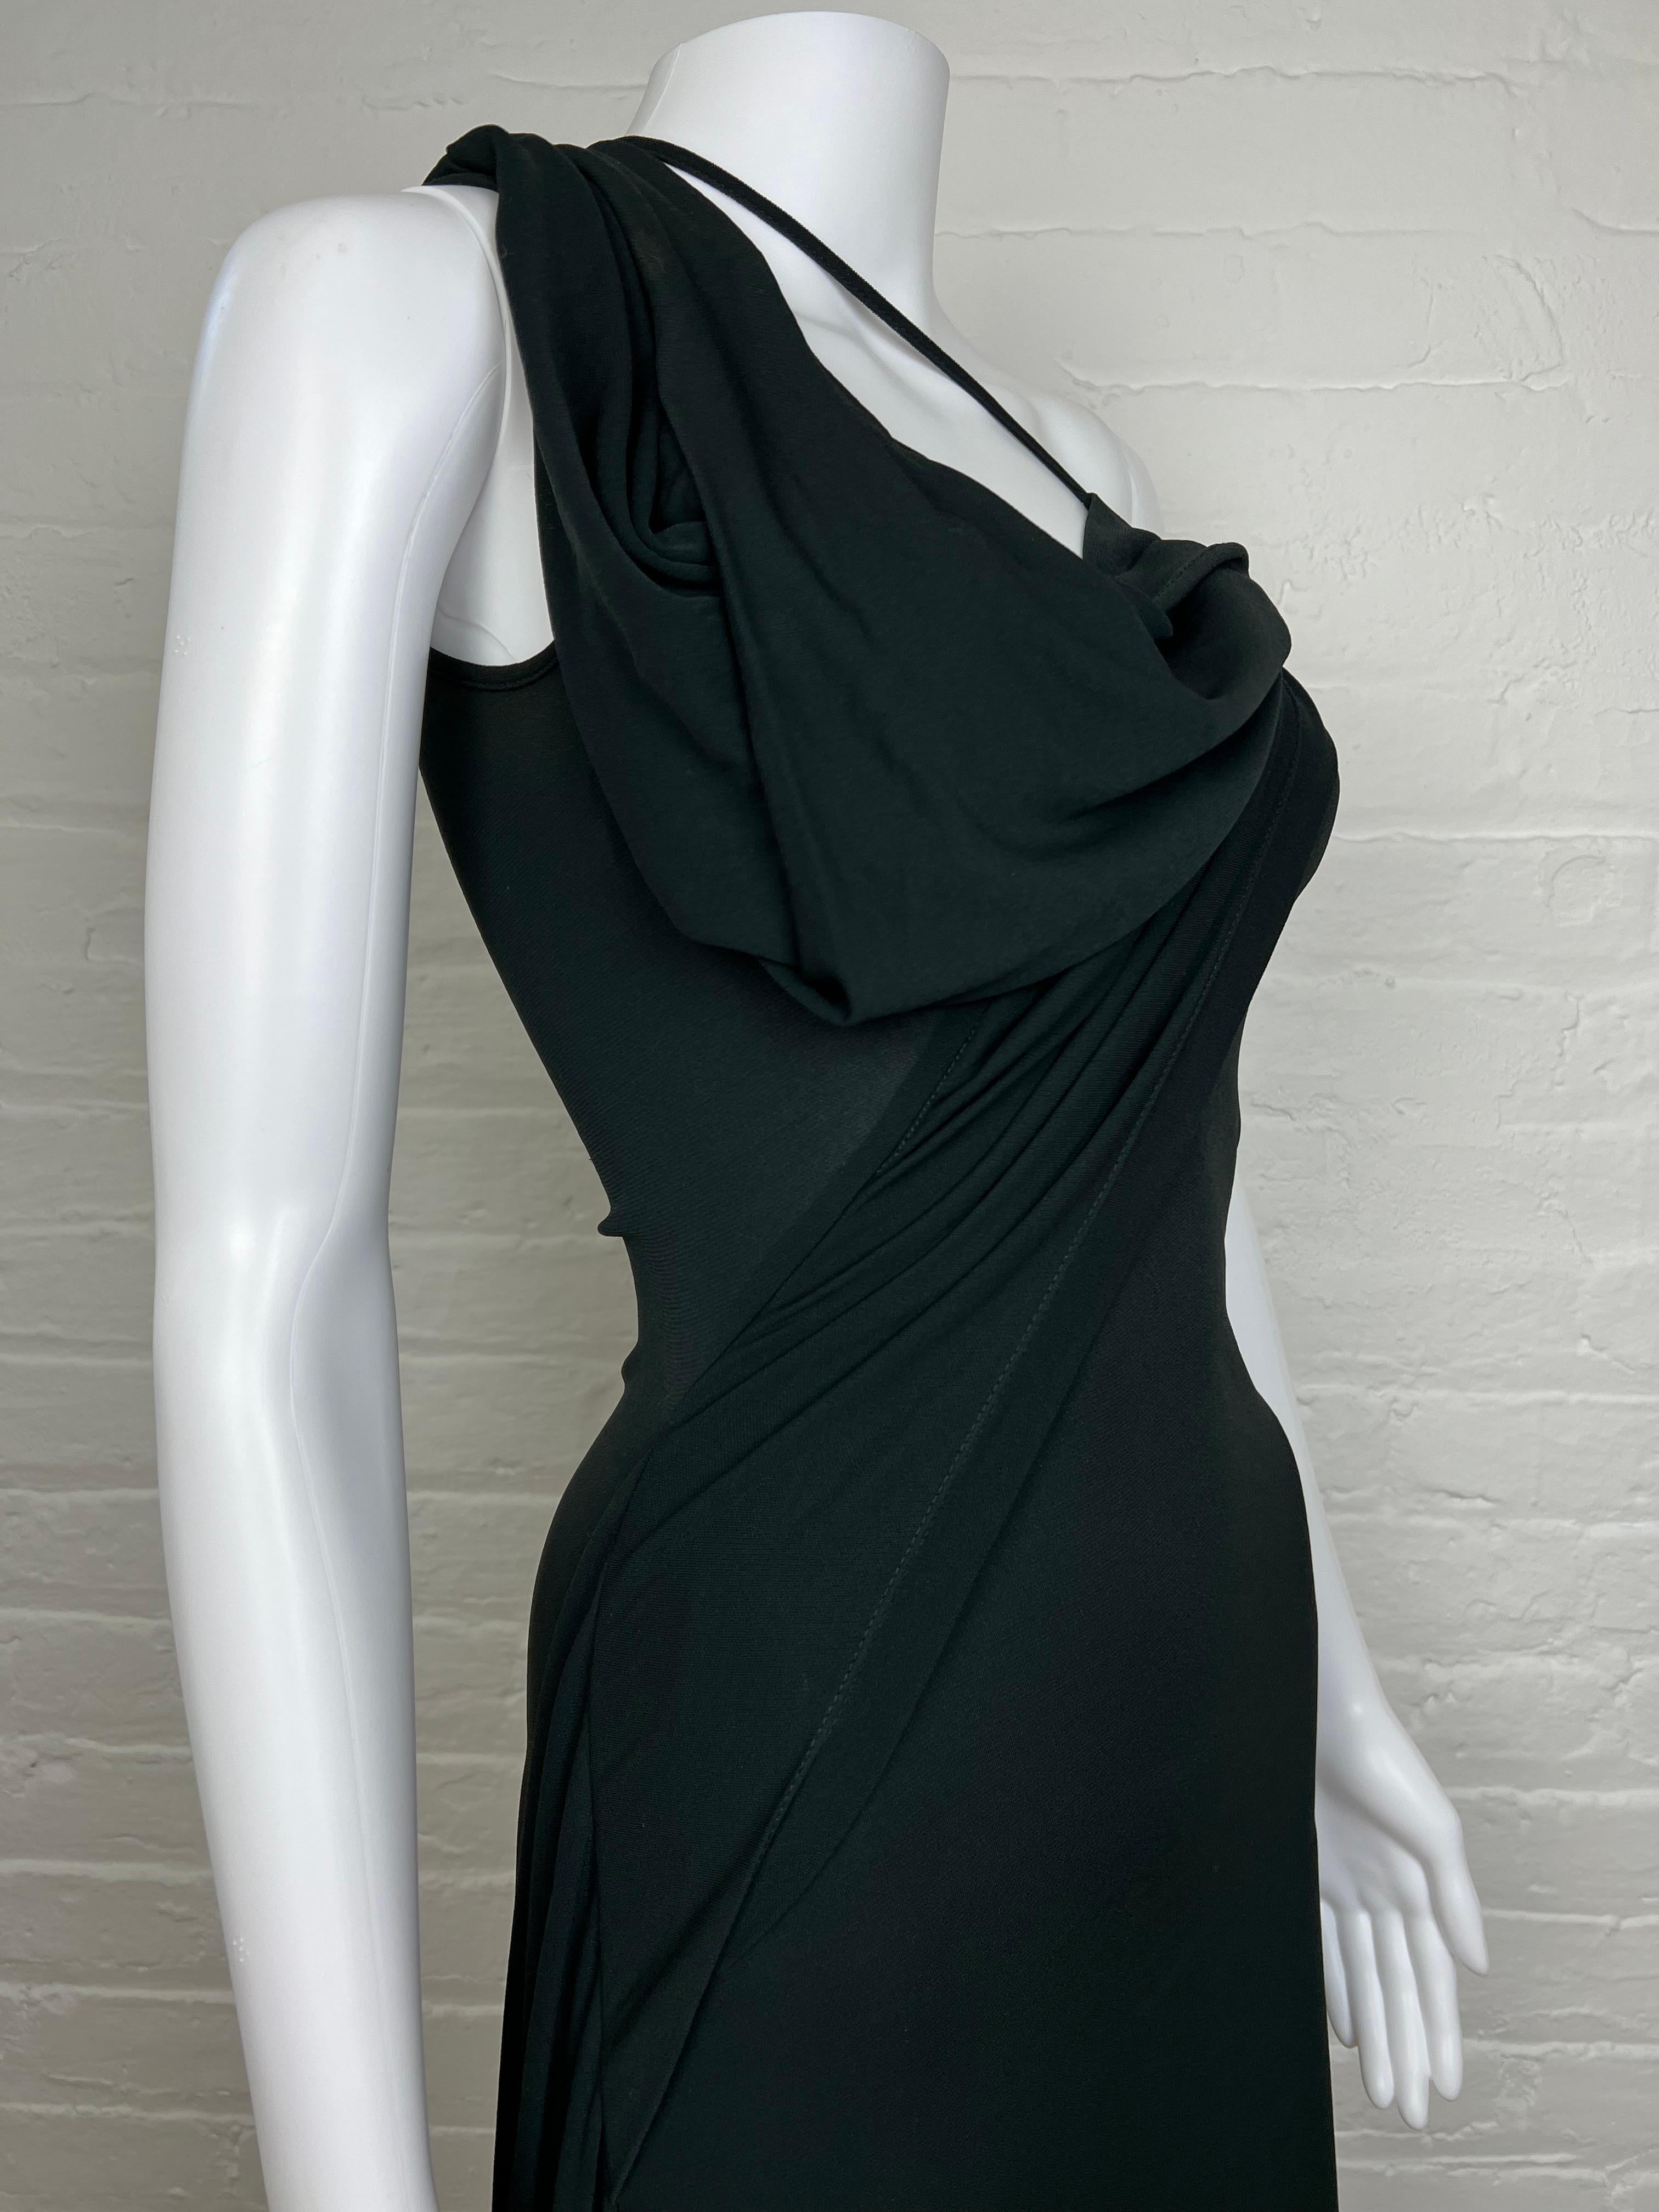 Vivienne Westwood Spring 1997 gown  2